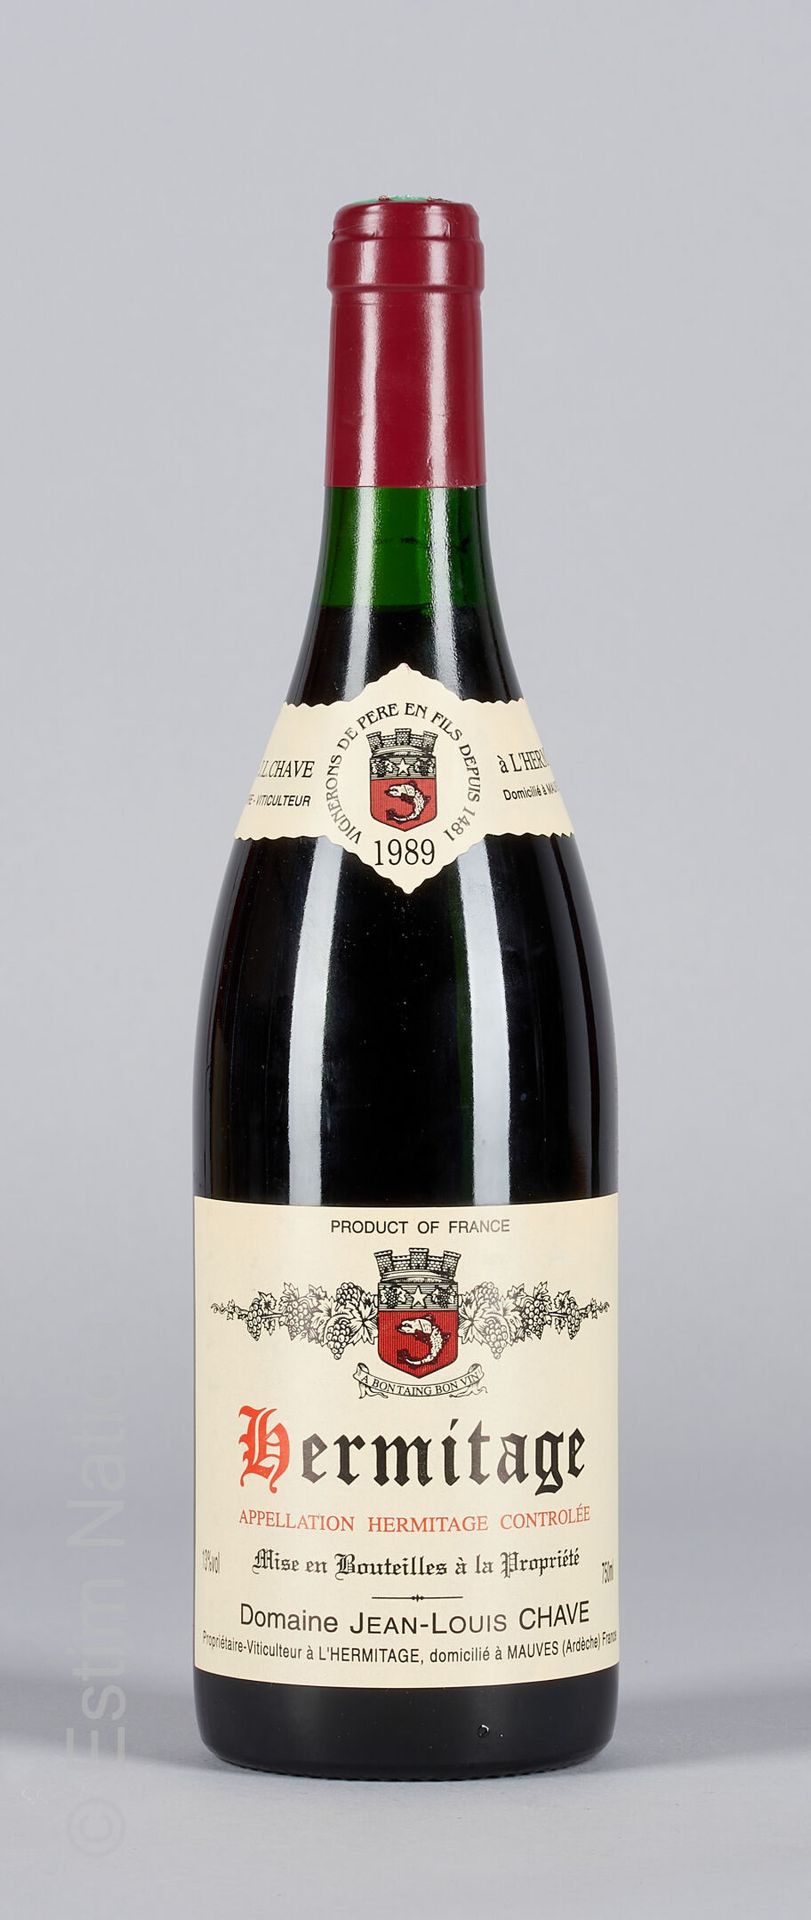 HERMITAGE ROUGE 1 botella HERMITAGE 1989 Jean-Louis Chave

(N. Entre 2 y 2,5cm)